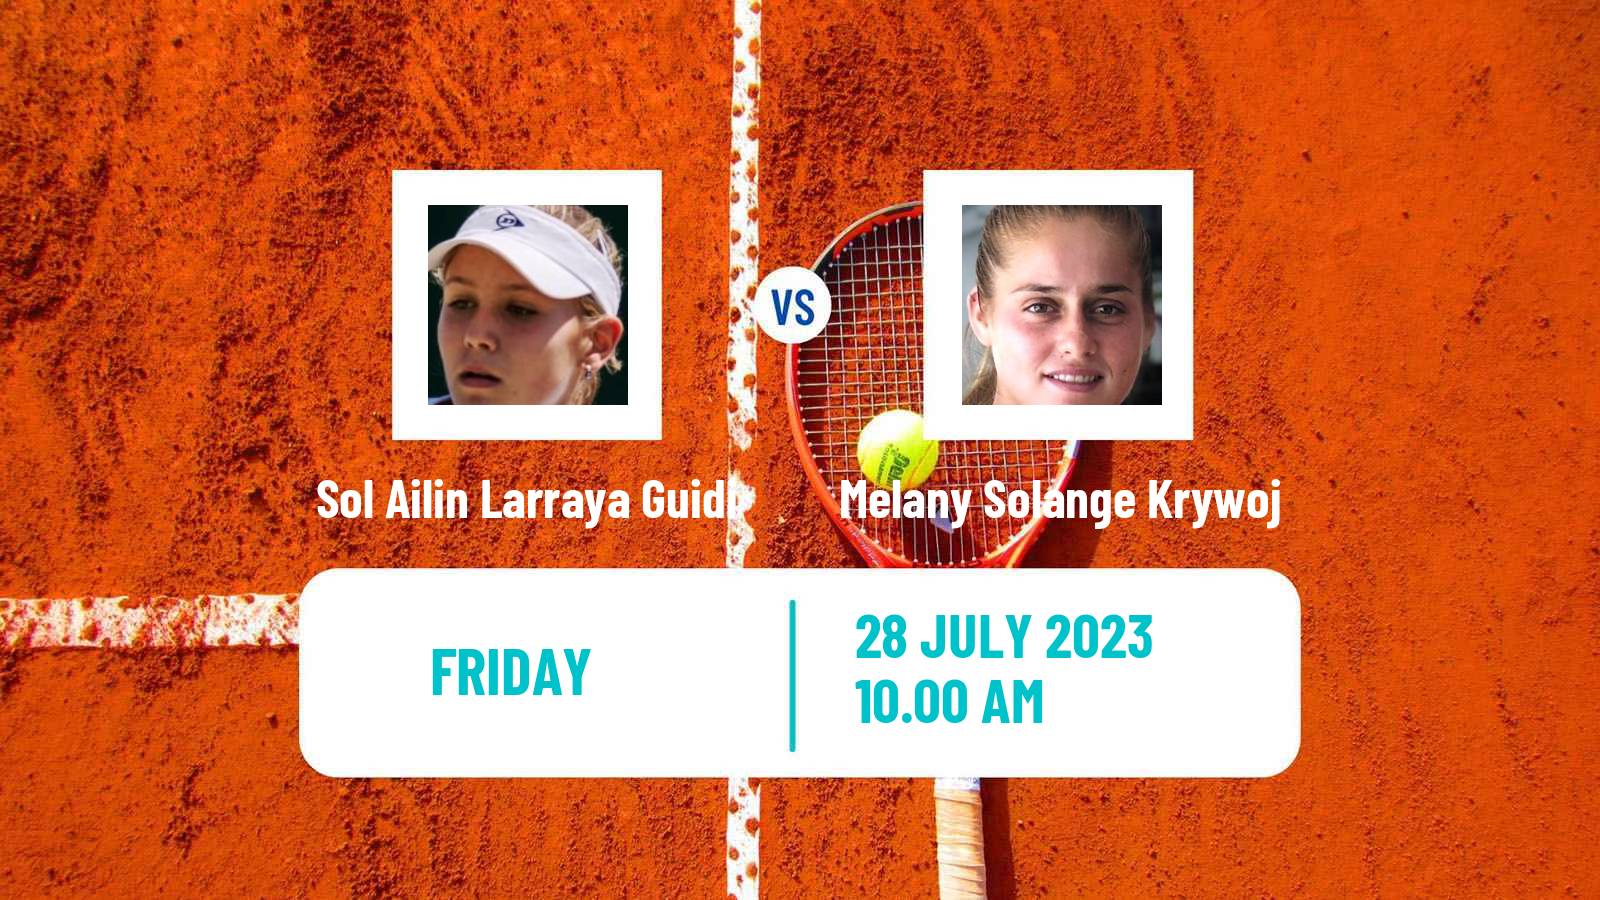 Tennis ITF W25 Bragado Women Sol Ailin Larraya Guidi - Melany Solange Krywoj